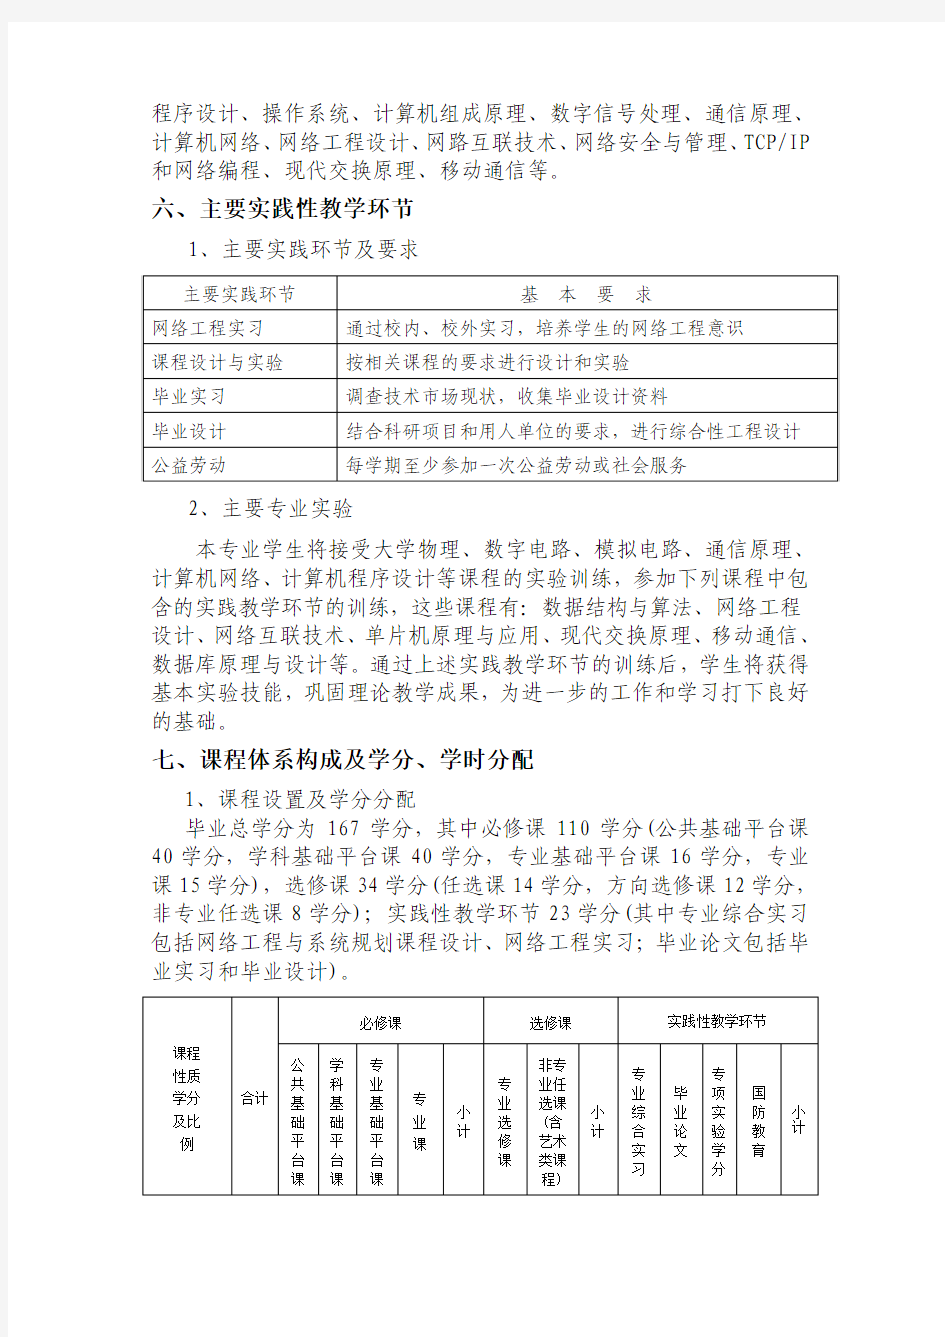 河南大学物理与电子学院2010级网络工程专业培养方案定稿